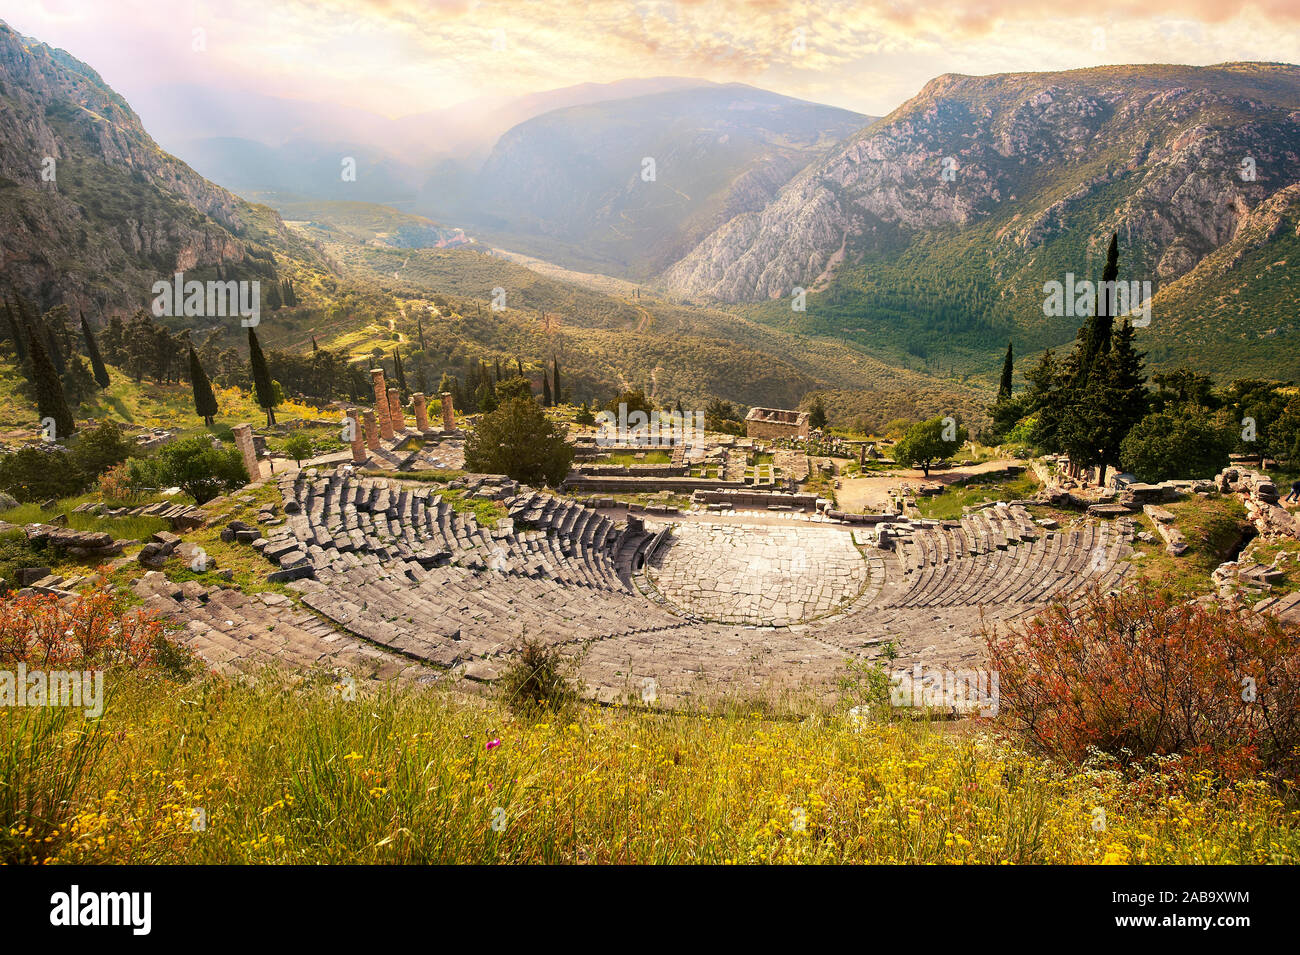 Théâtre grec antique de Delphes, site archéologique de Delphes, Delphi, Grèce Banque D'Images